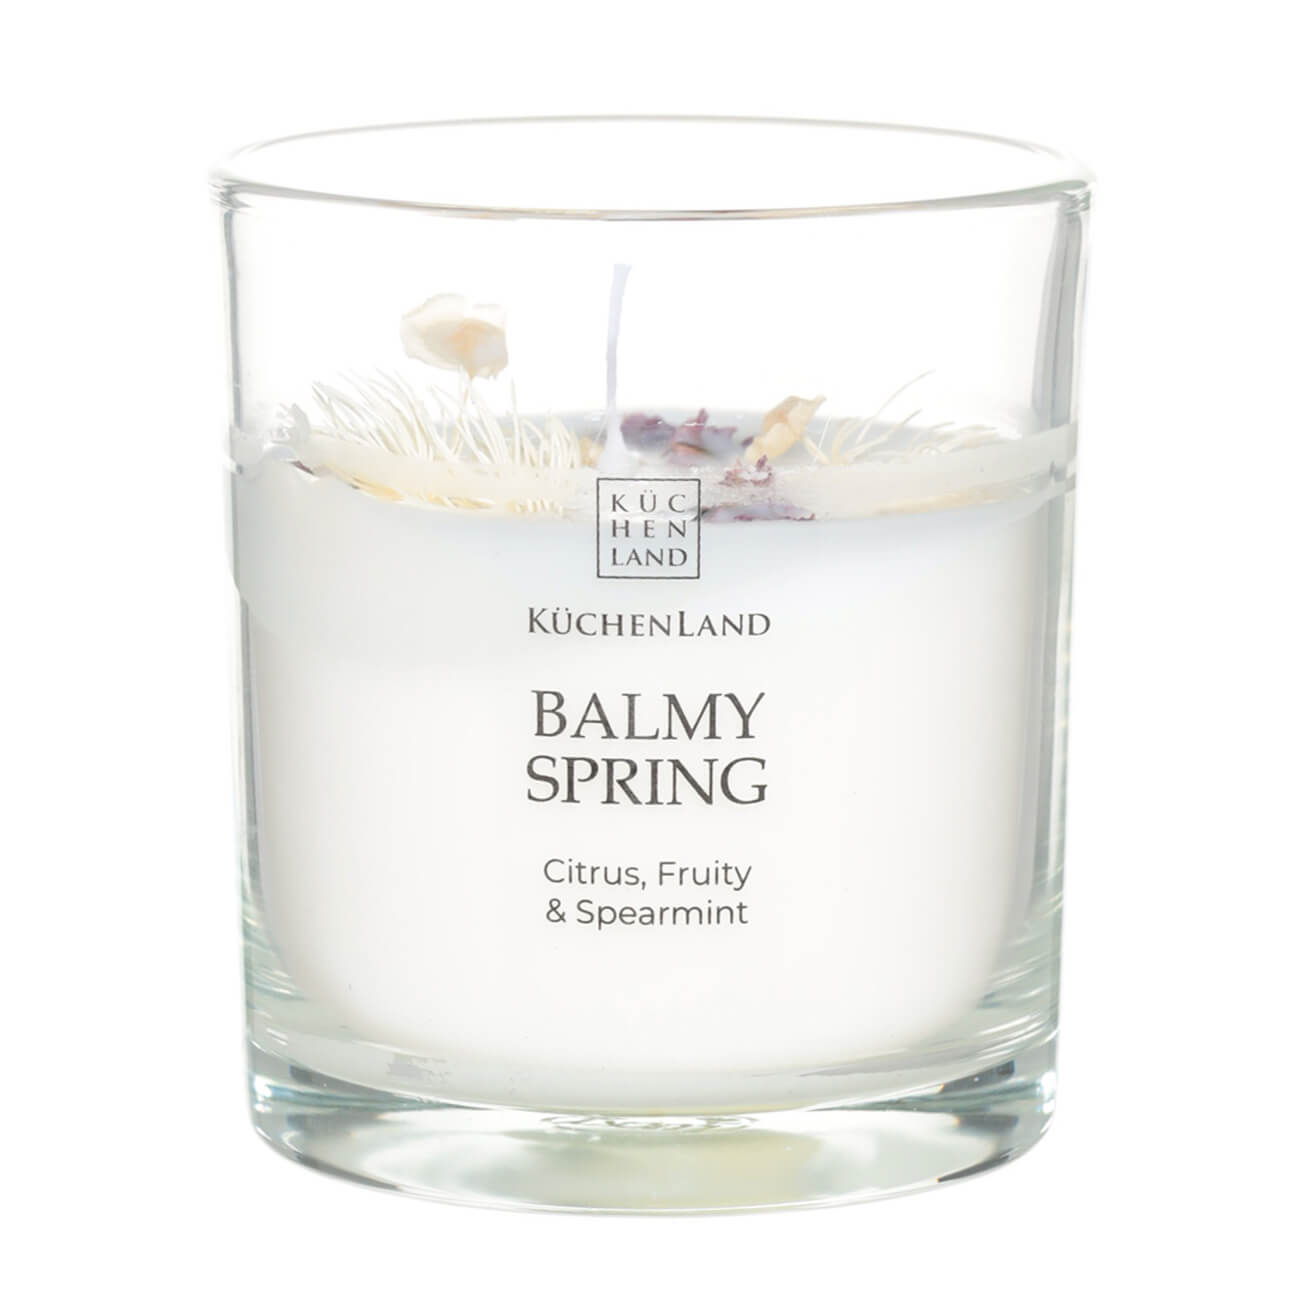 Свеча ароматическая, 9 см, в подсвечнике, с сухоцветами, Citrus, Fruity&Spearmint, Balmy spring изображение № 1